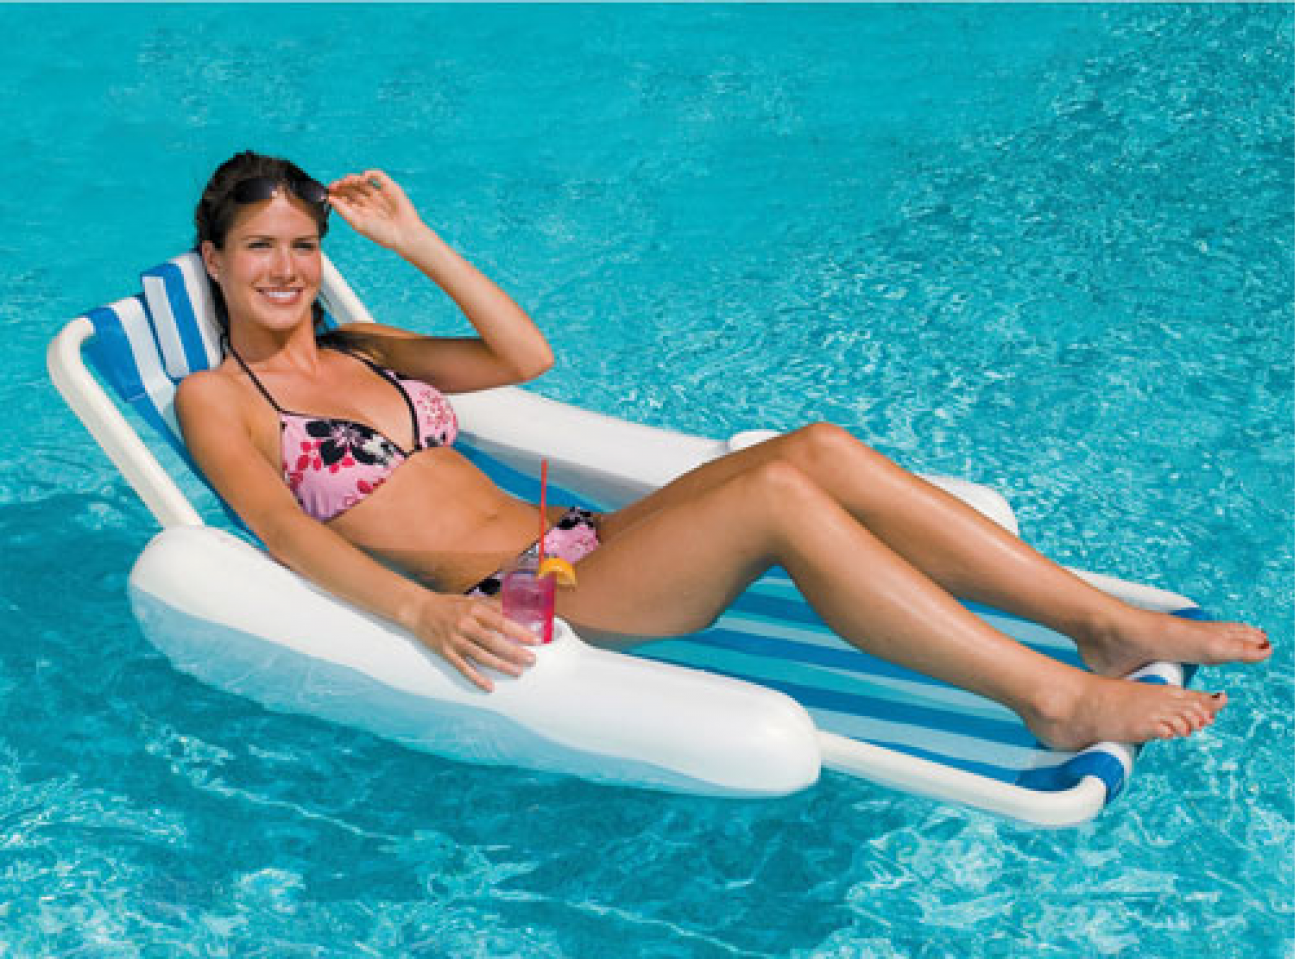 Swimline Sunchaser Sling Inflatable Pool Float - White/Blue